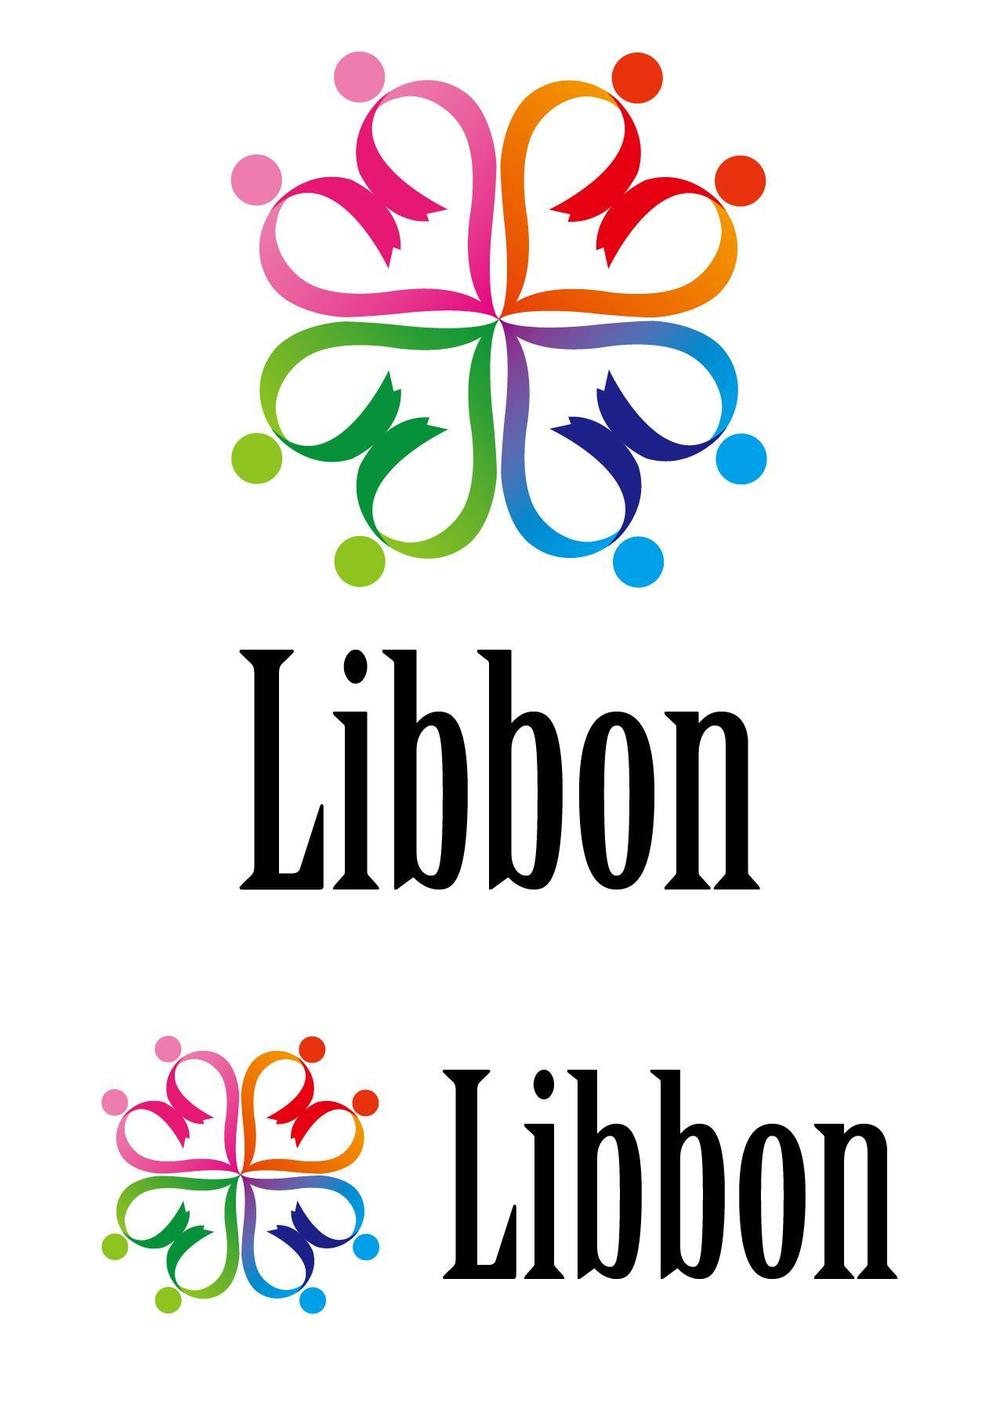 キュレーションサイト「Libbon」のロゴ 1-01.jpg